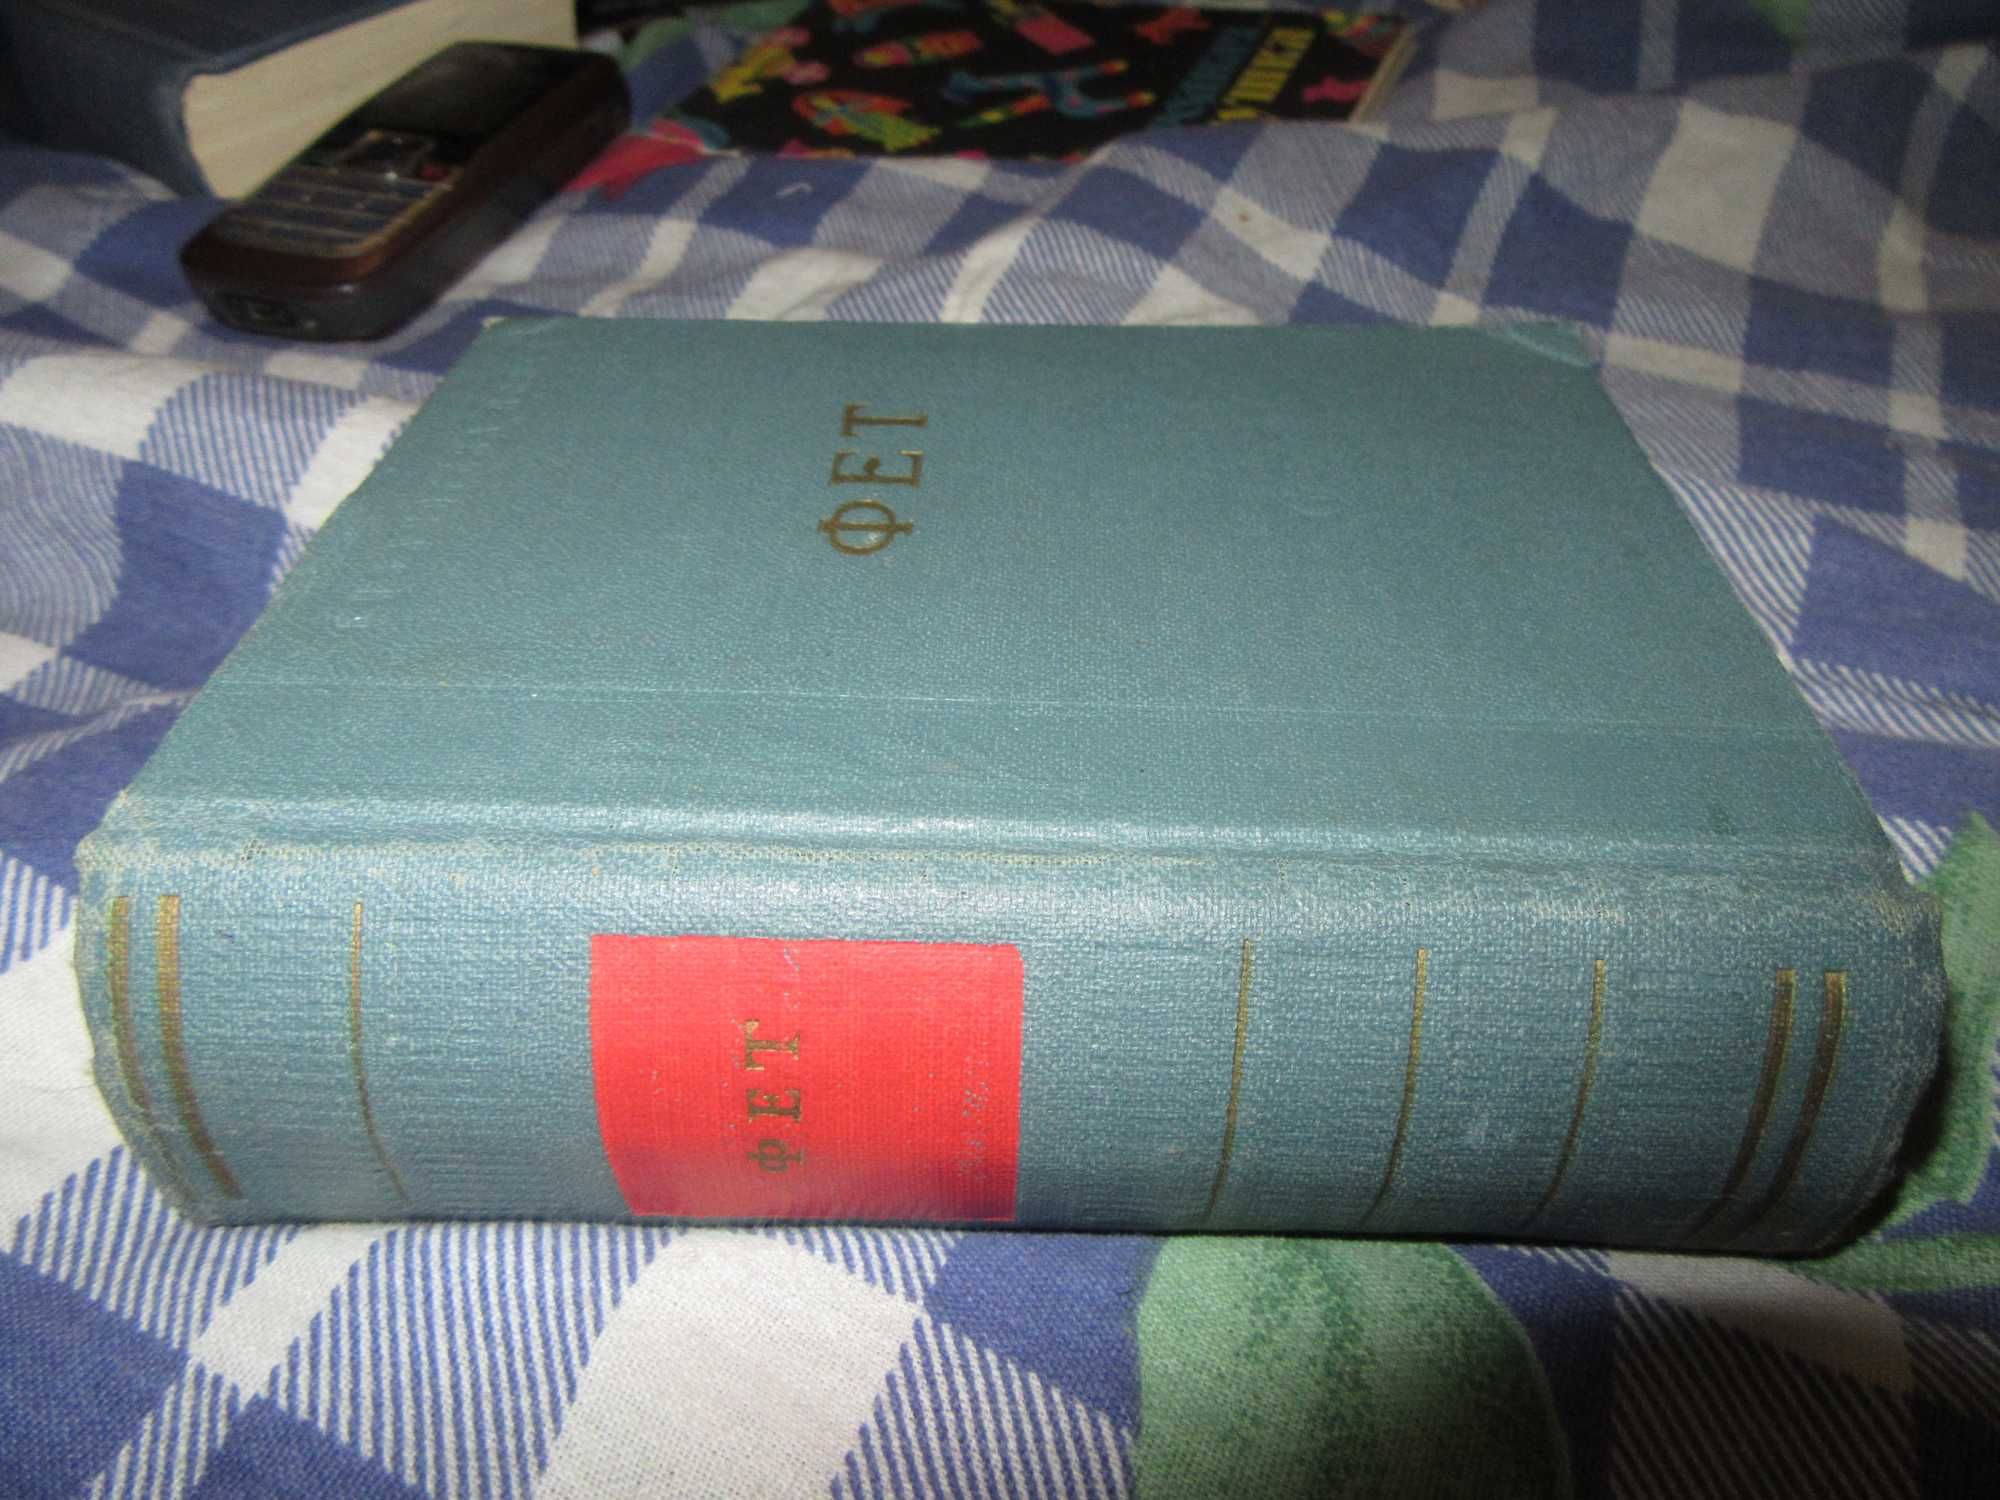 Фет А. А. Стихотворения. Серия: Библиотека поэта.1963 г.